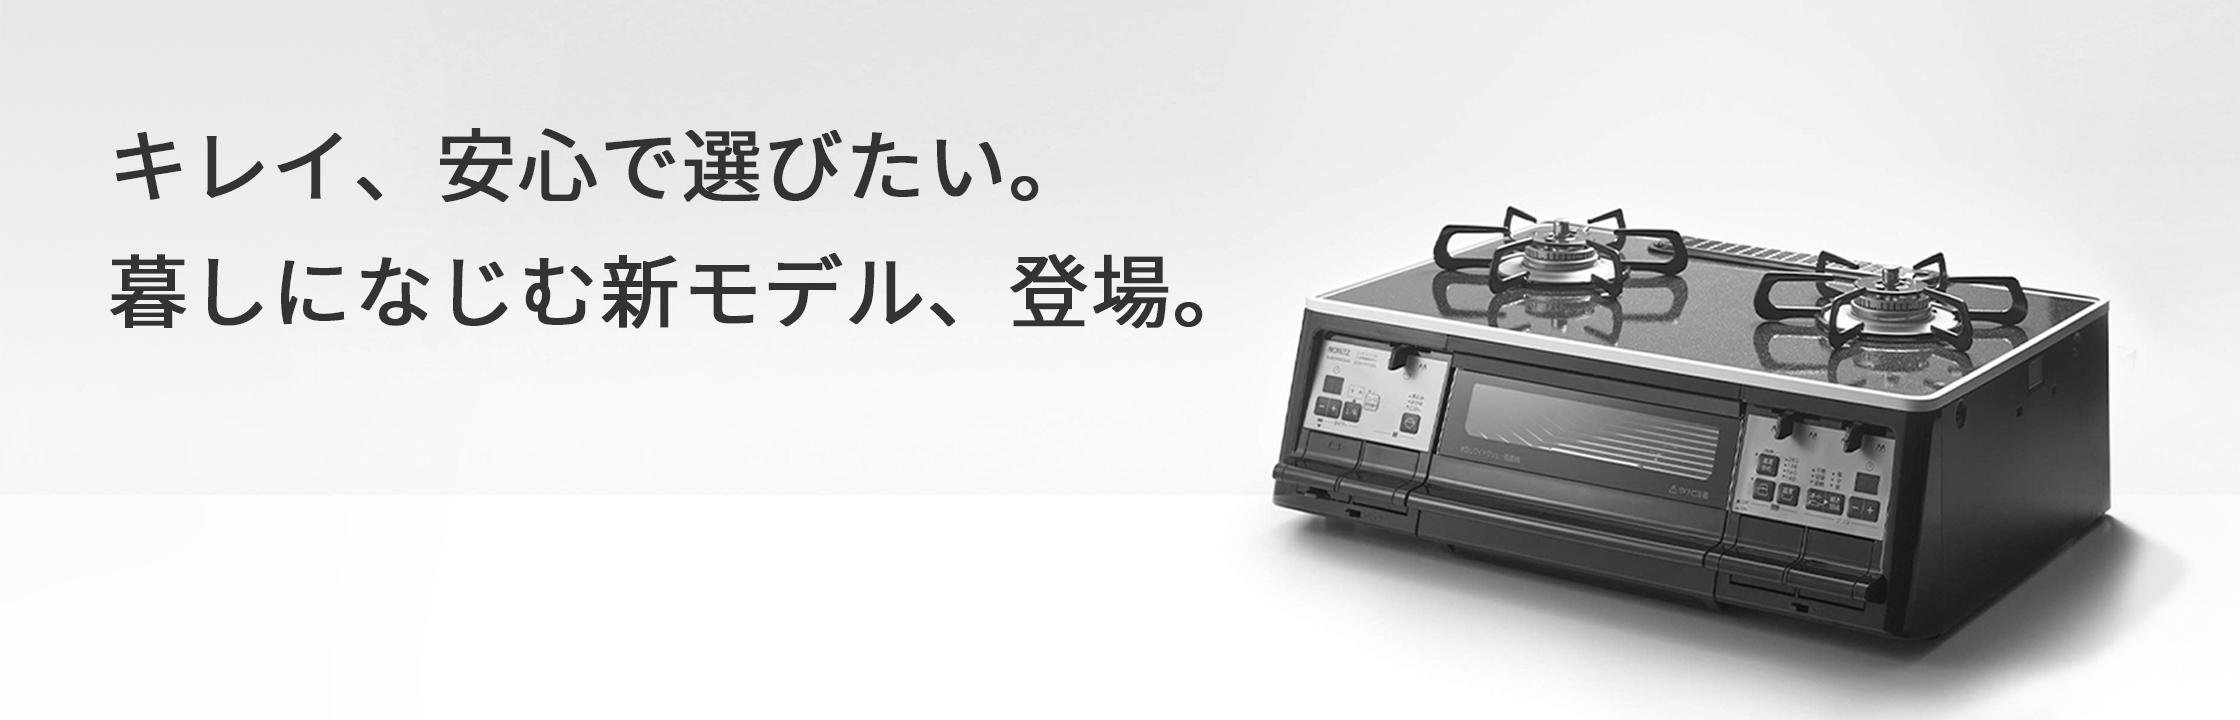 激安/新作 TOATOA20広島店富士インパルス ショップシーラー FS-315